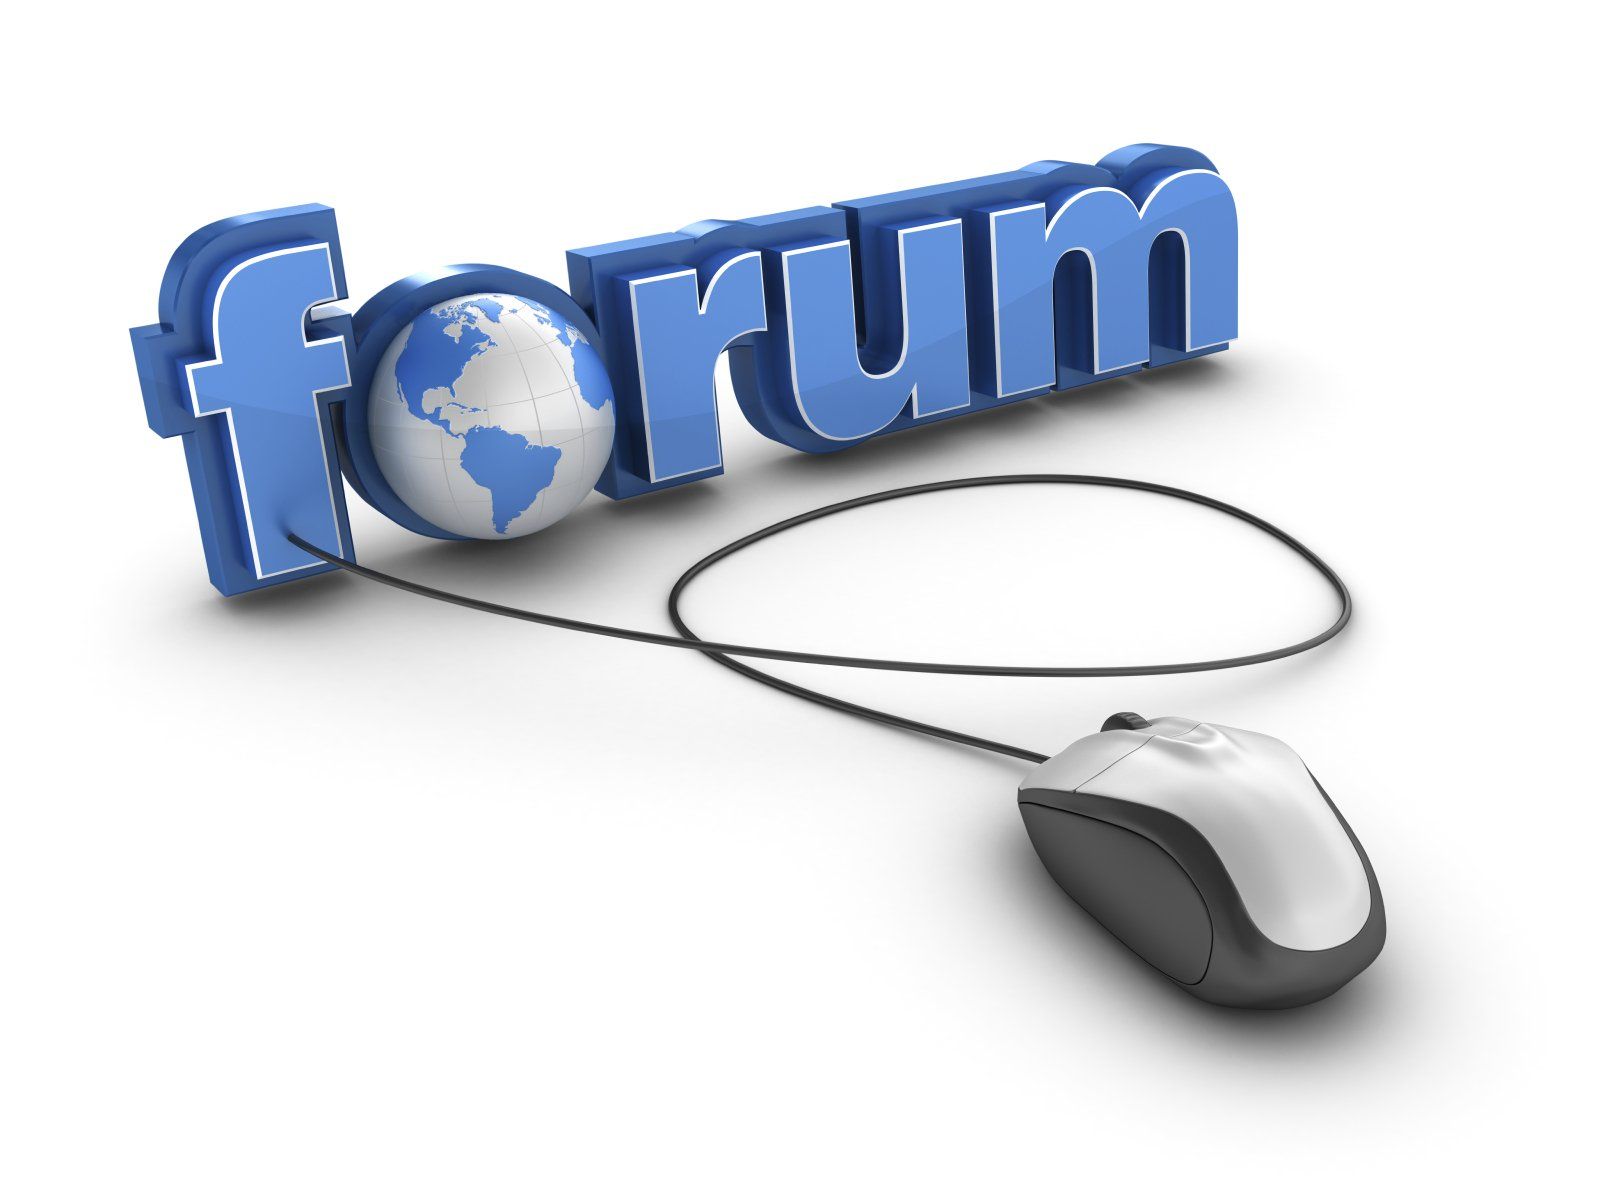 Forums vkmonline com